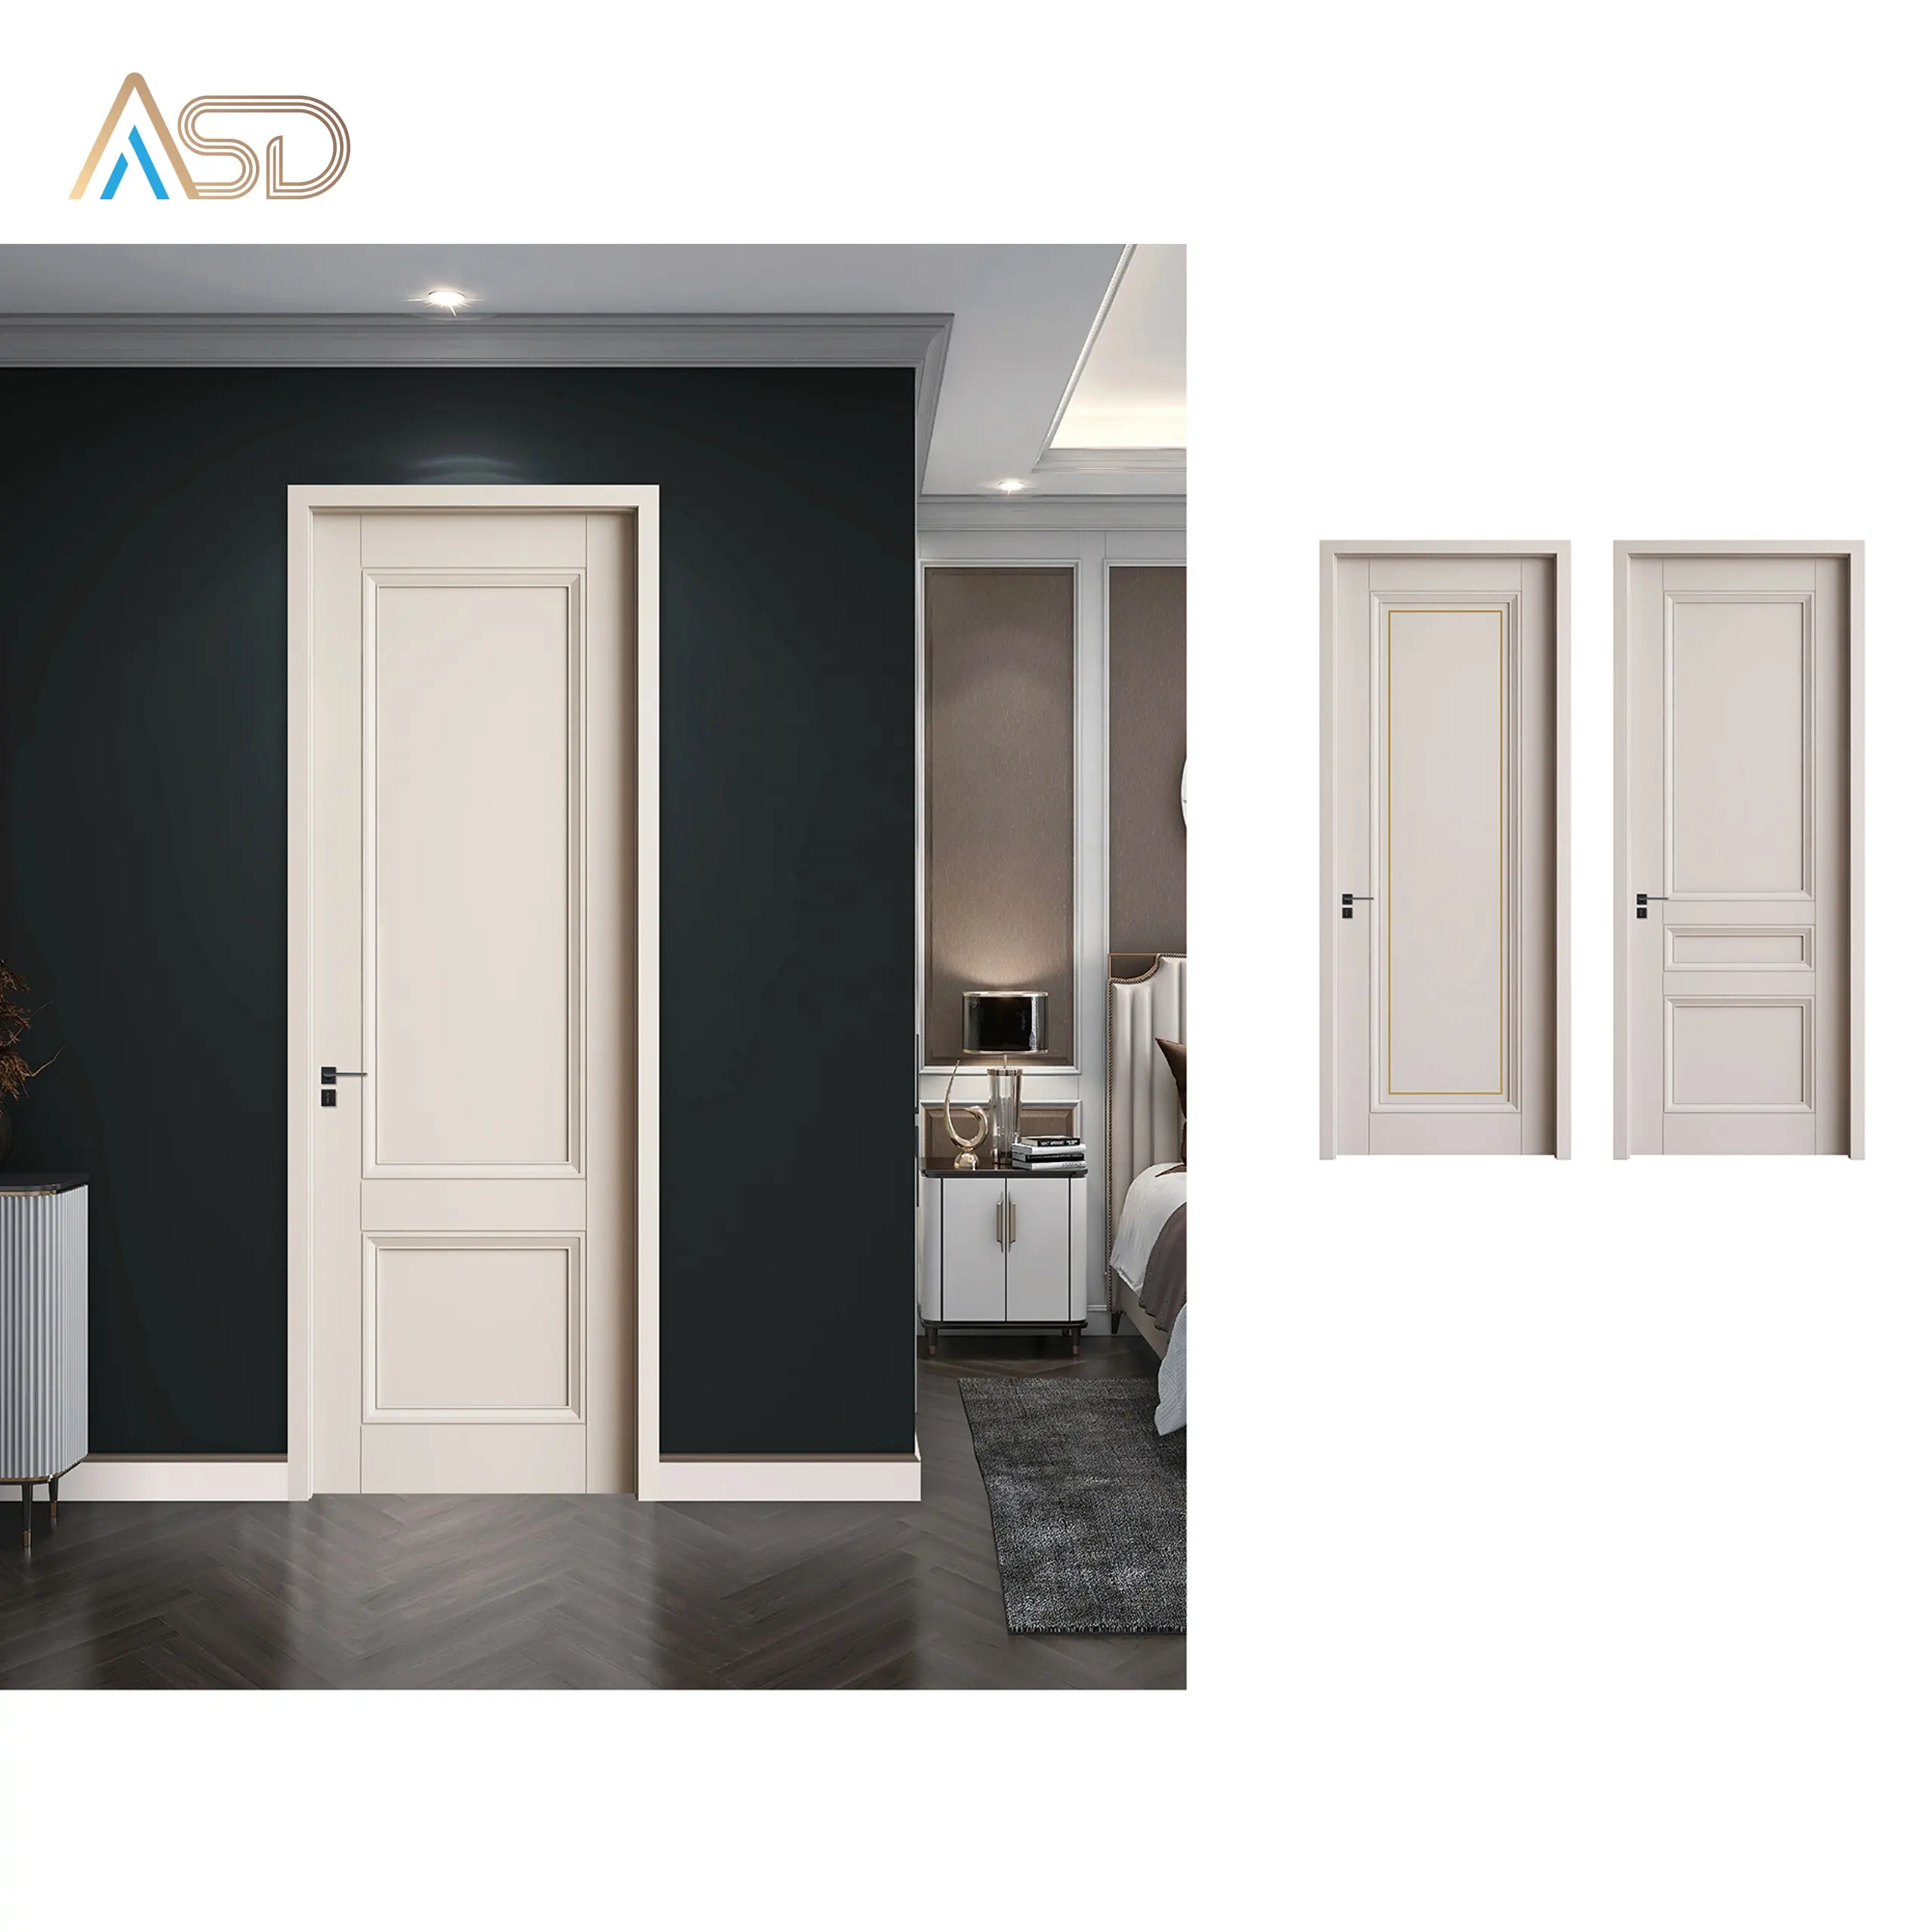 Современный белый простой деревянный качели межкомнатные двери сарая с новым дизайном водонепроницаемый фанерный материал для квартир